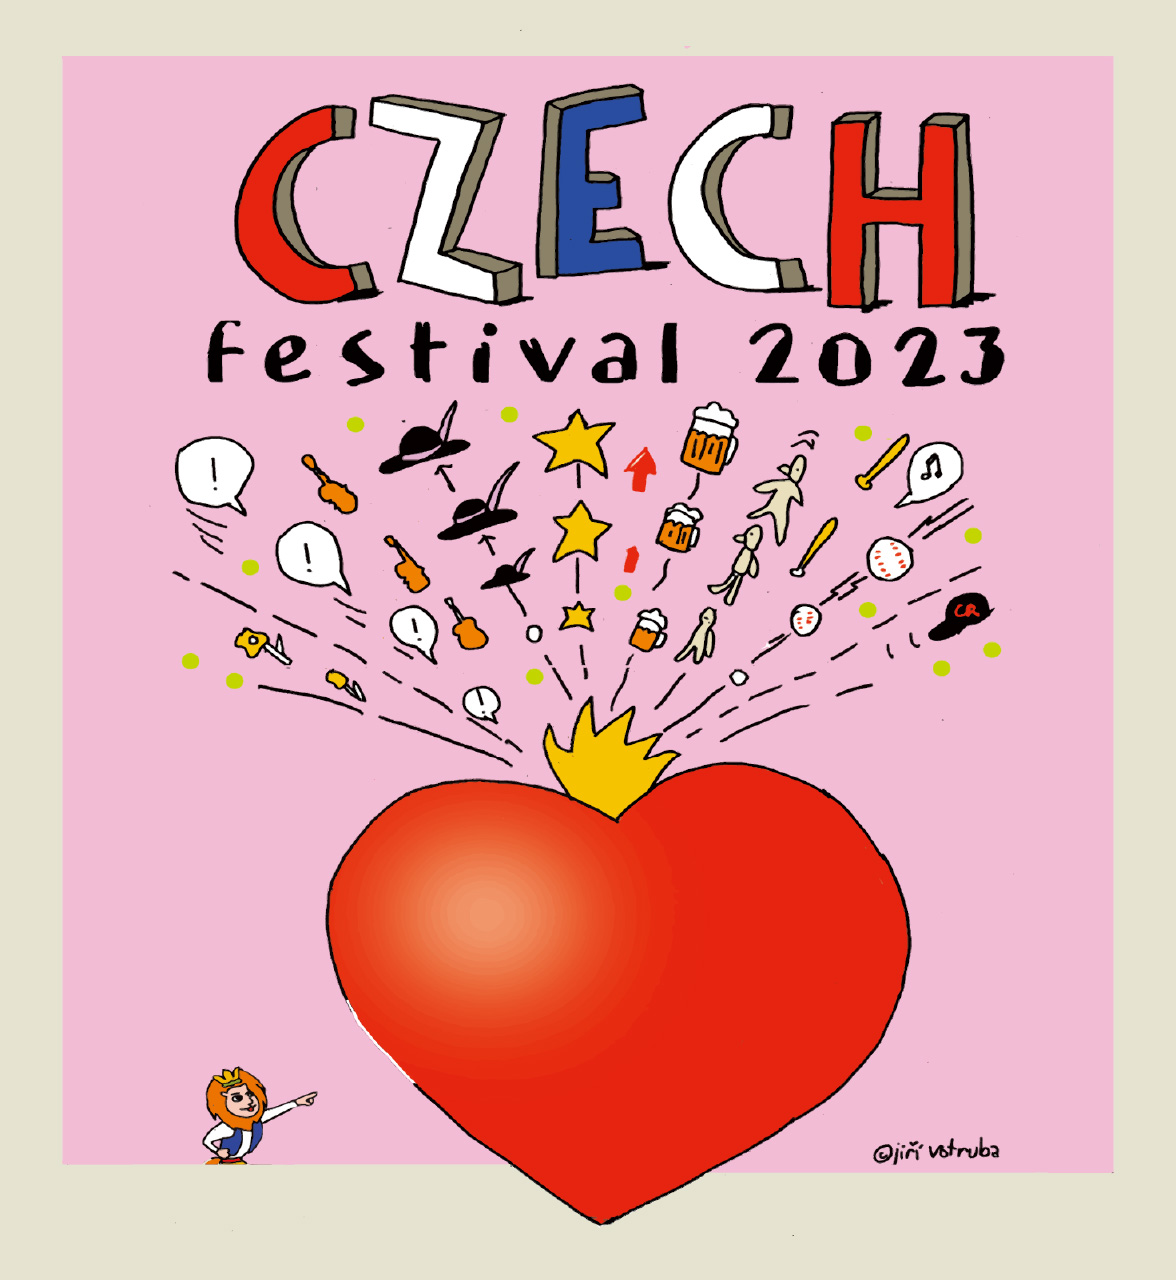 CZECH Festival 2023